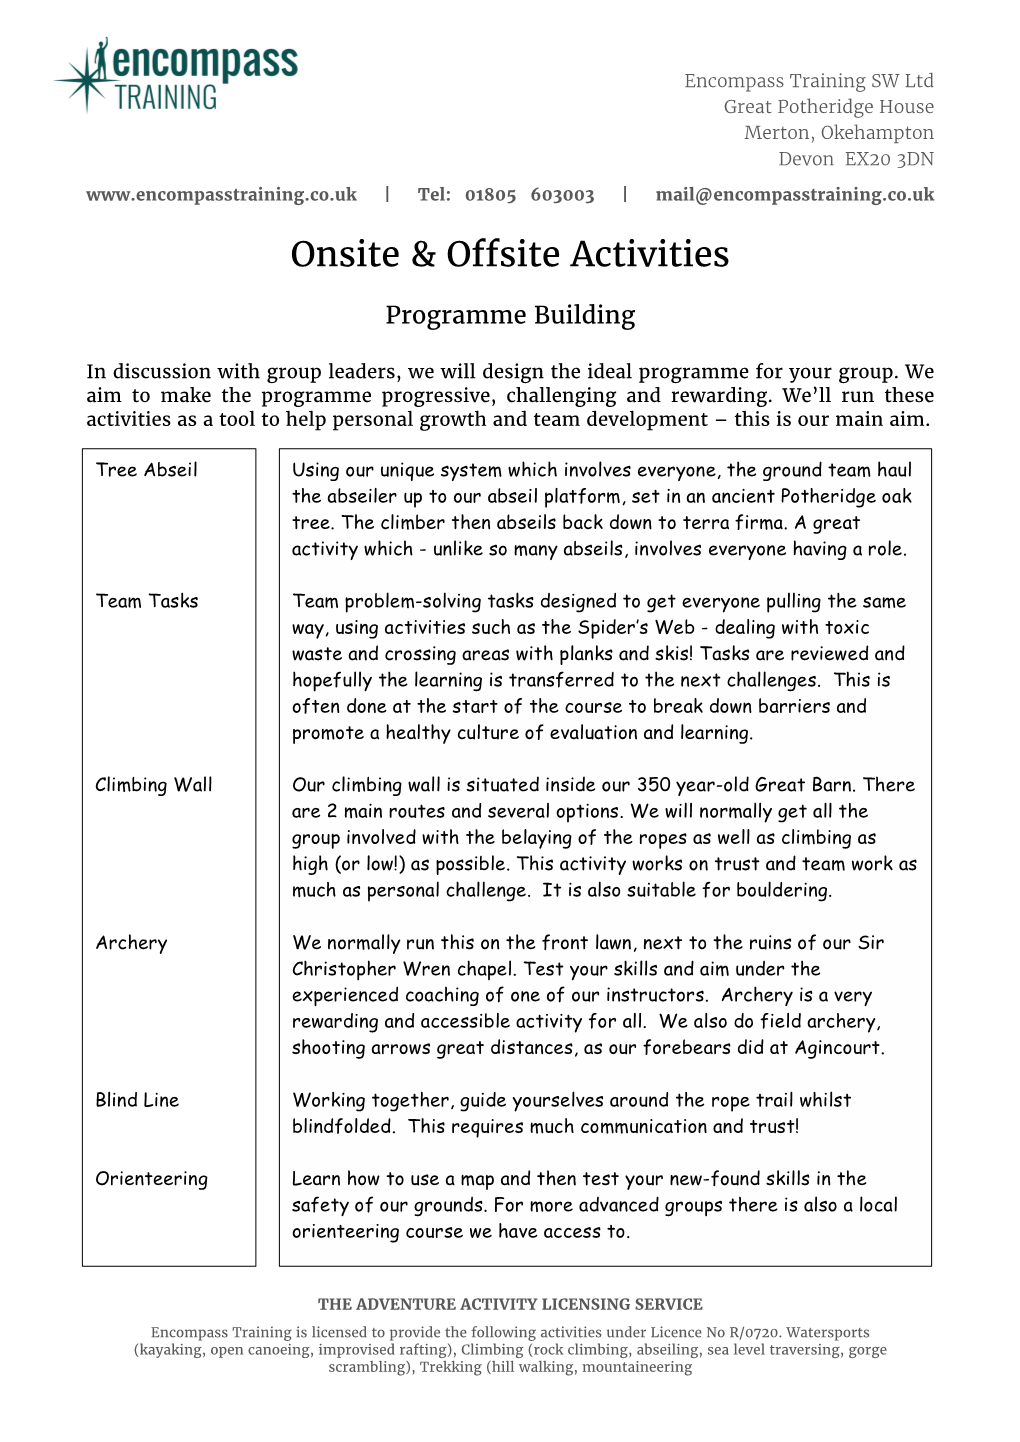 Onsite & Offsite Activities